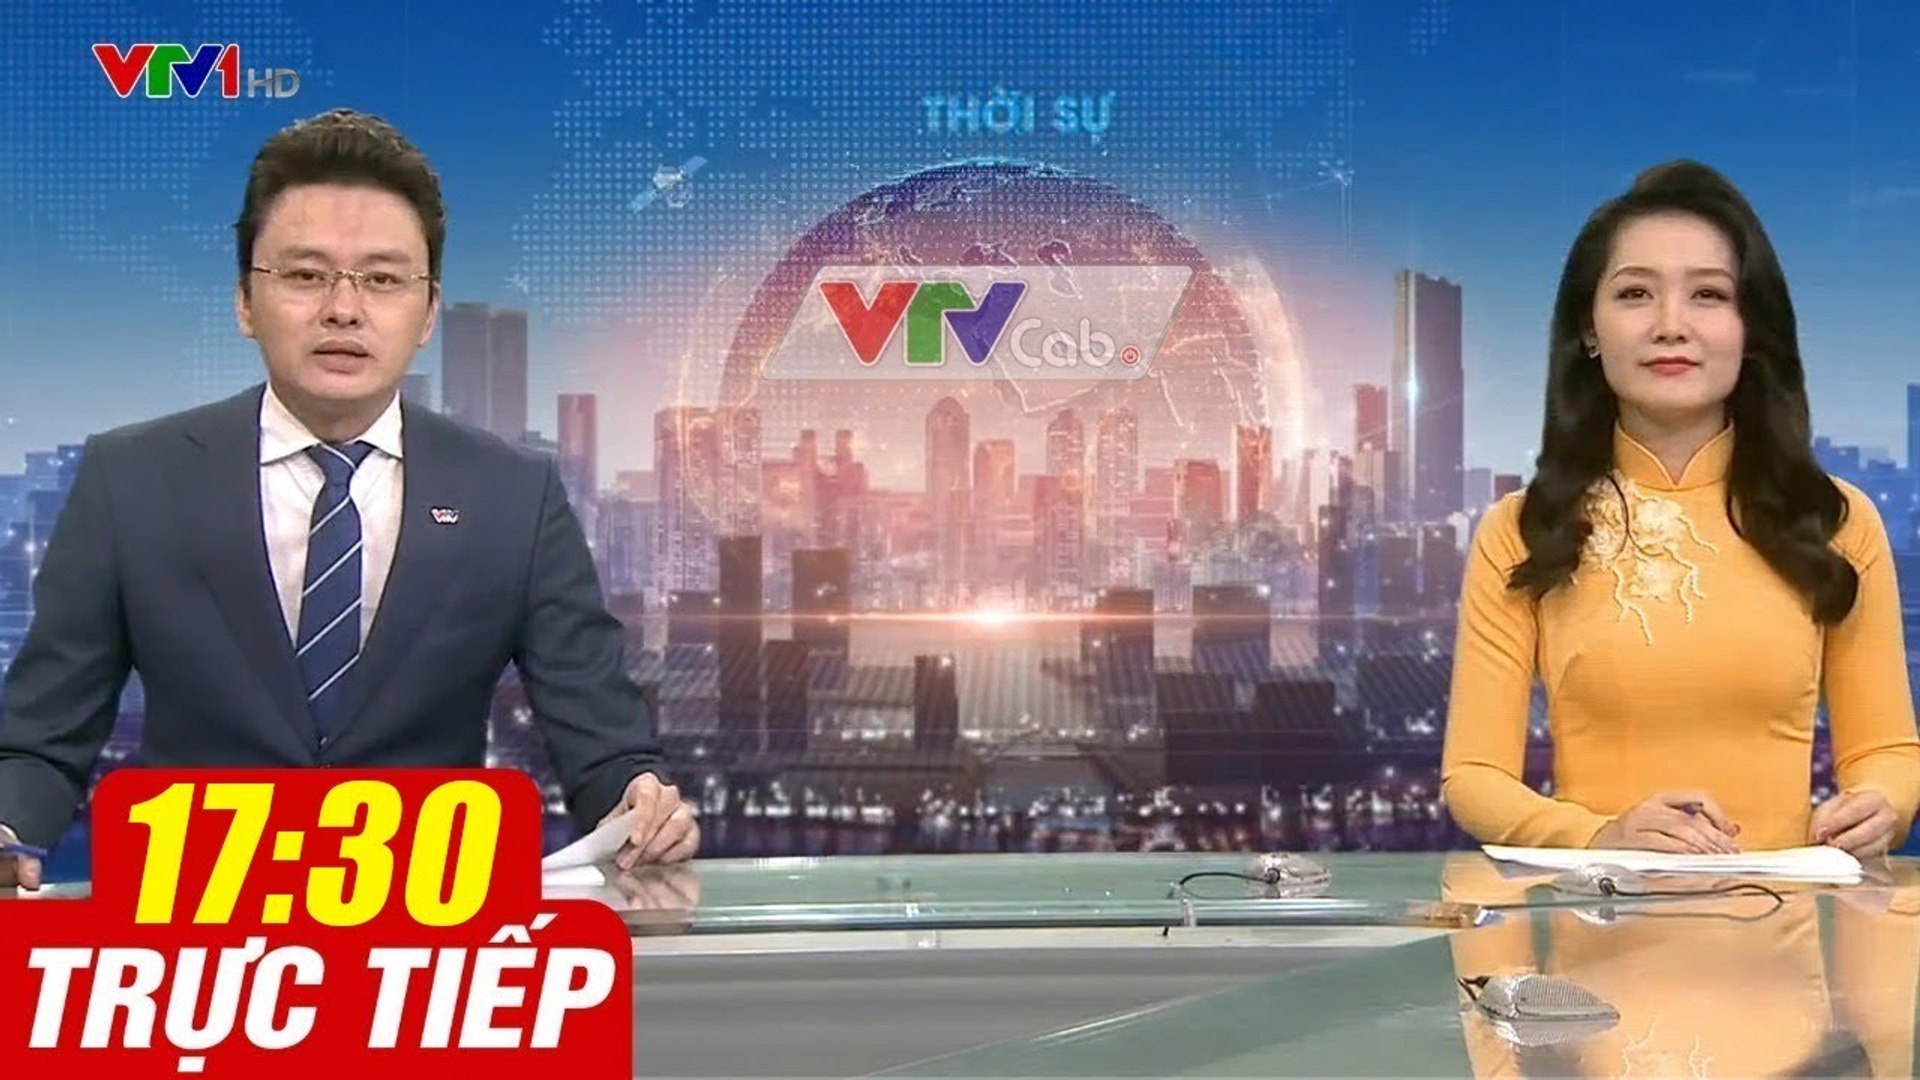 Trực Tiếp VIỆT NAM HÔM NAY 17h30 ngày 25.08.2020  Tin tức thời sự VTV1 mới nhất hôm nay